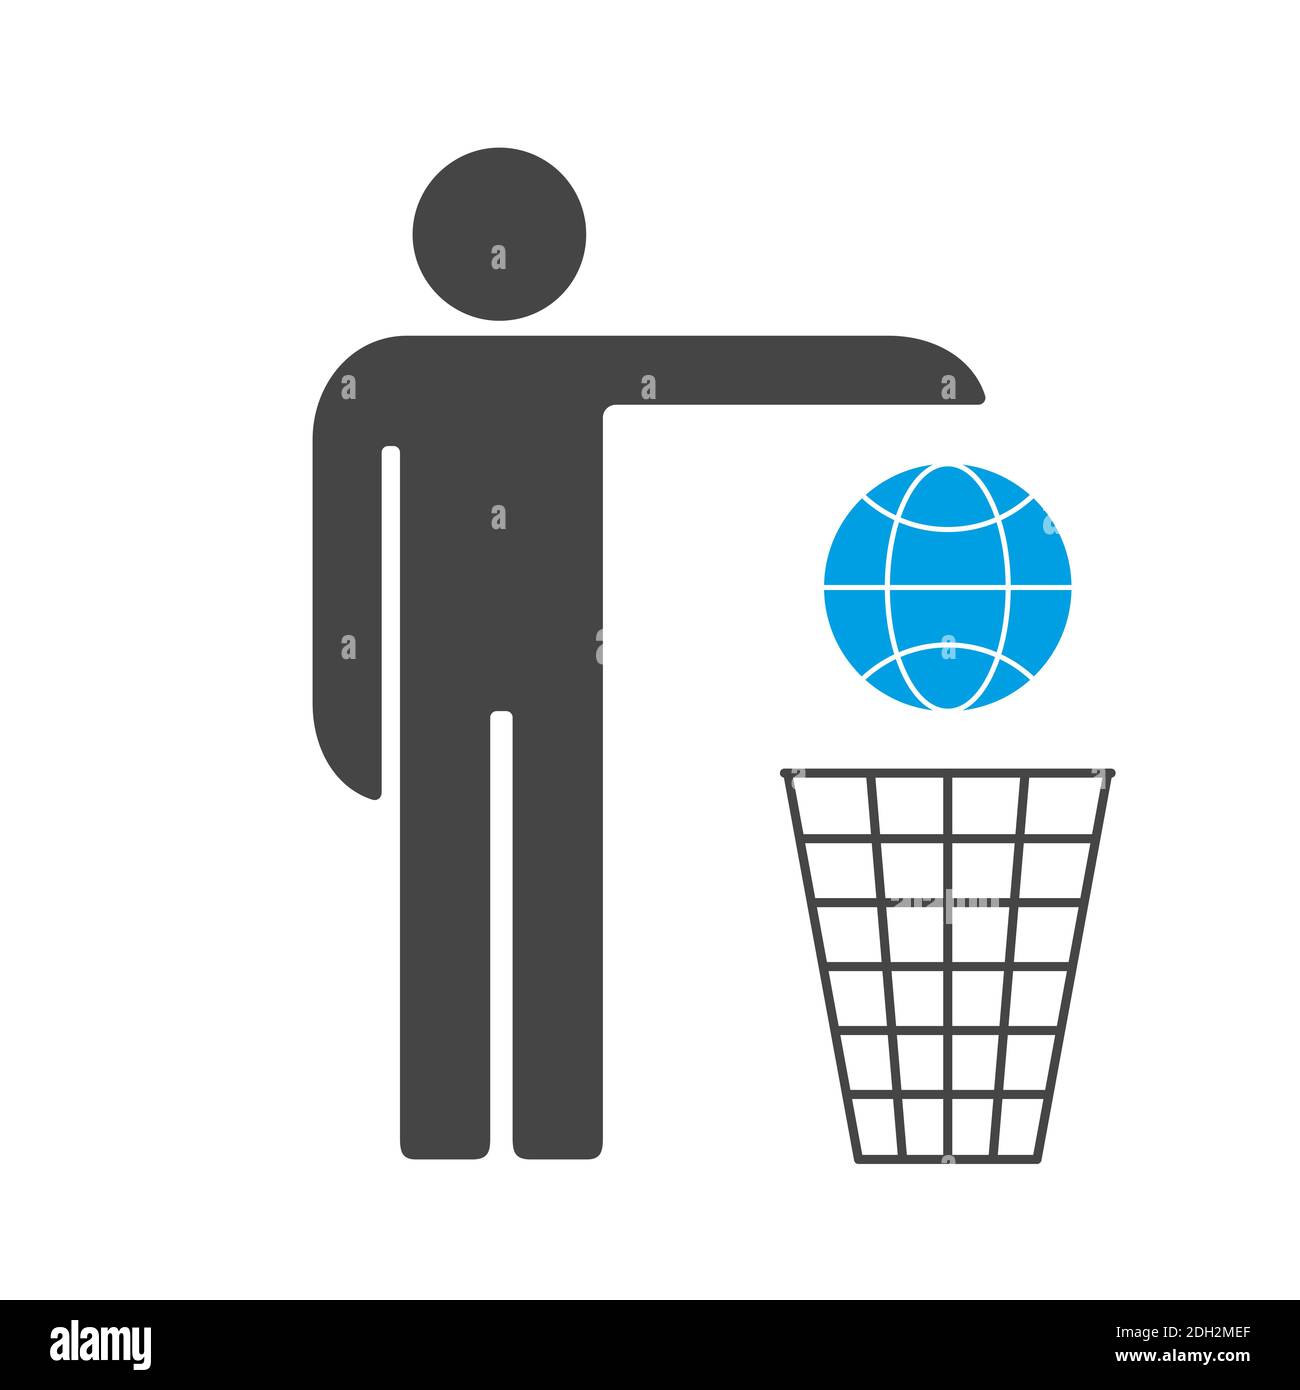 Wir verlieren die Erde. Der Mensch wirft die Erde in den Papierkorb Symbol  Stockfotografie - Alamy